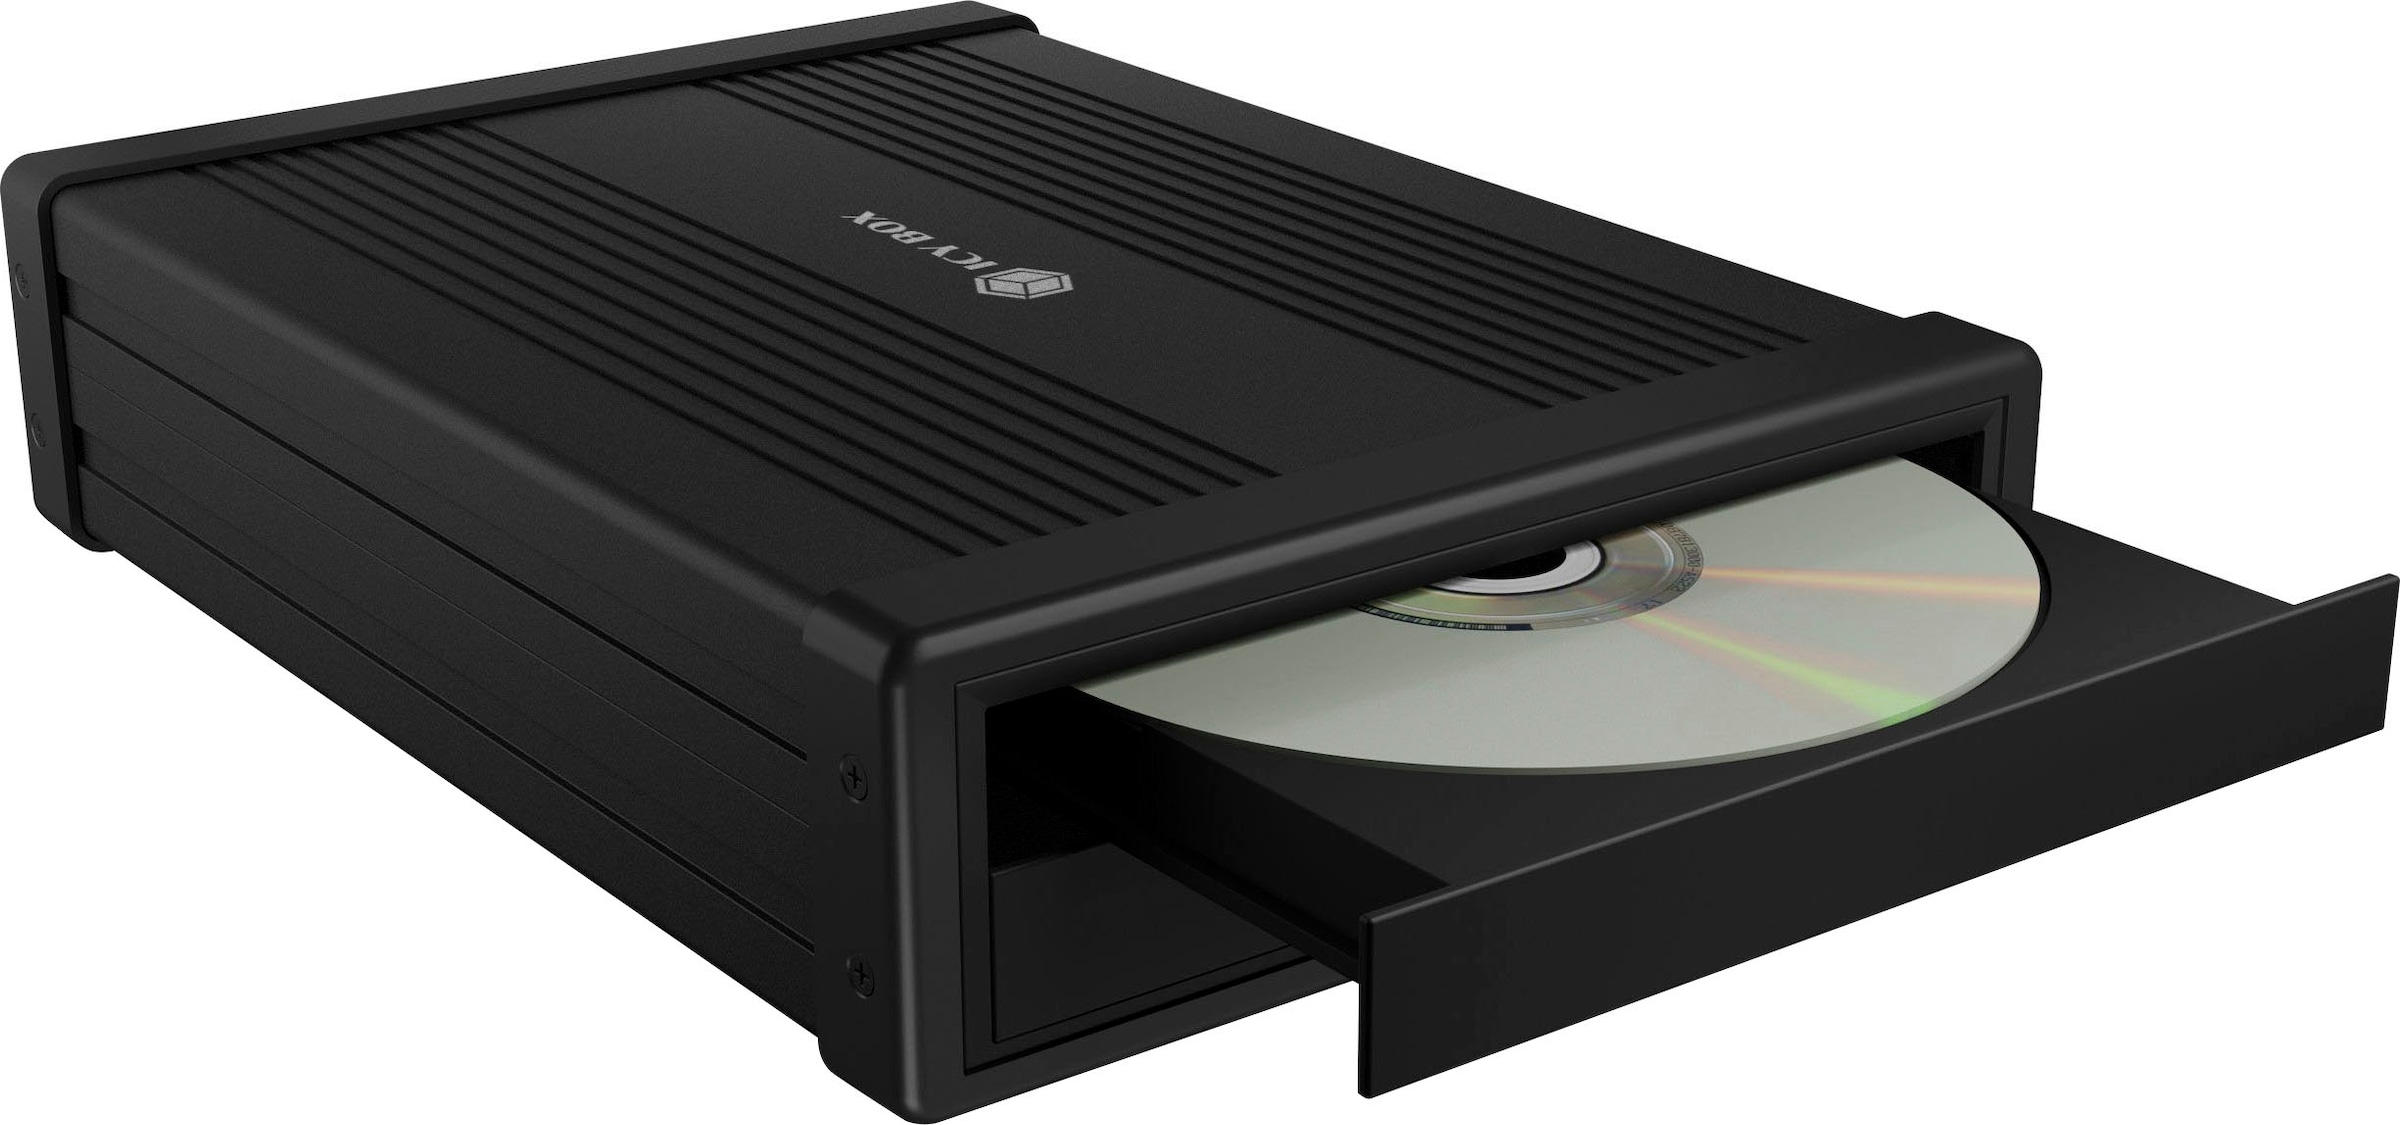 Festplatten-Gehäuse »ICY BOX externes Gehäuse für 1x 5,25 SATA DVD/Blue-Ray Laufwerk«